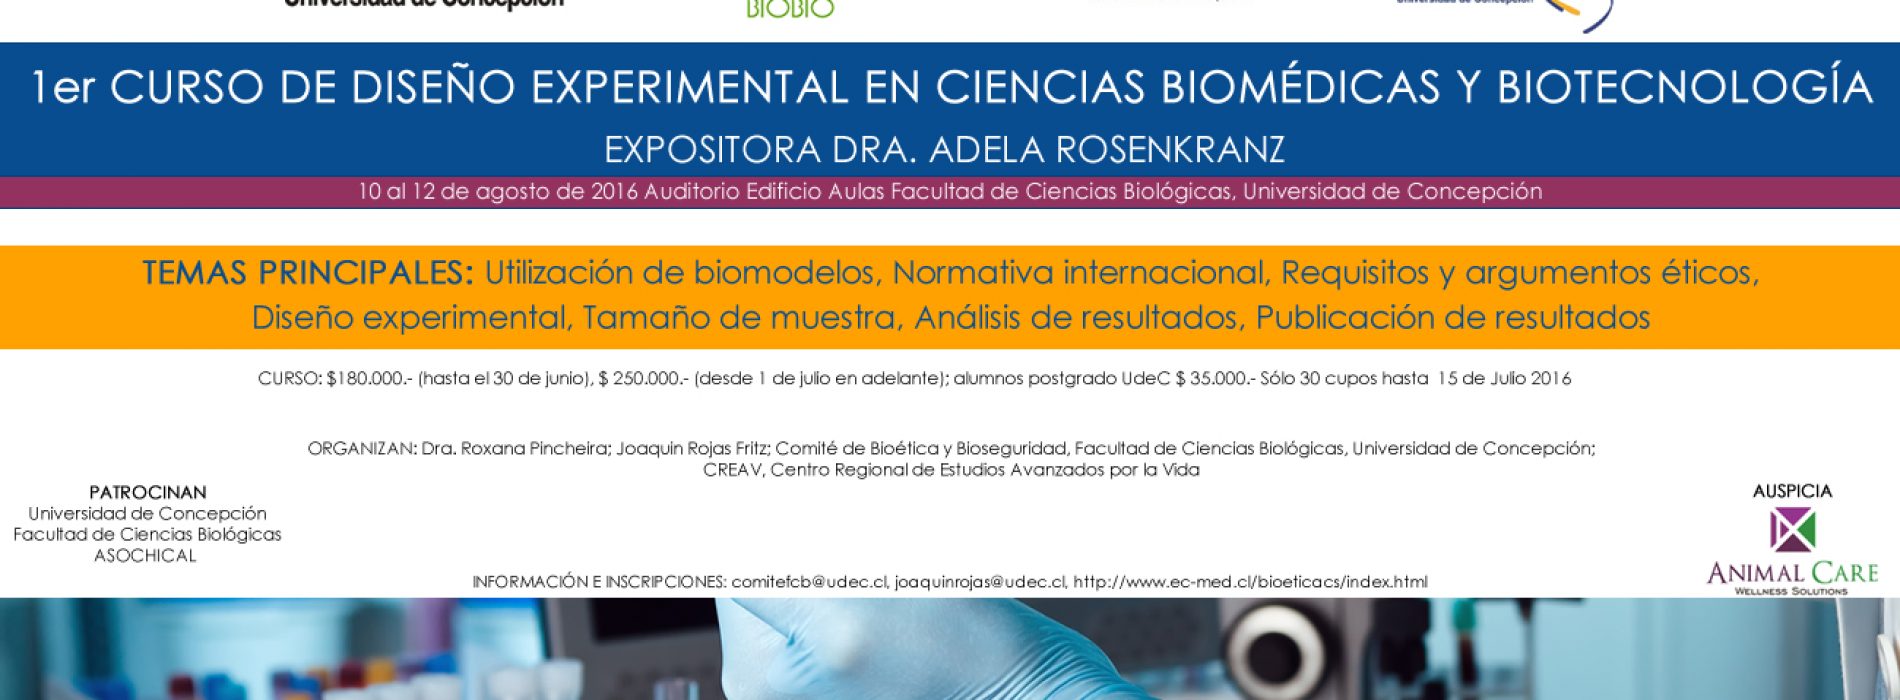 1° Curso de Diseño Experimental en Ciencias Biomédicas Y Biotecnología